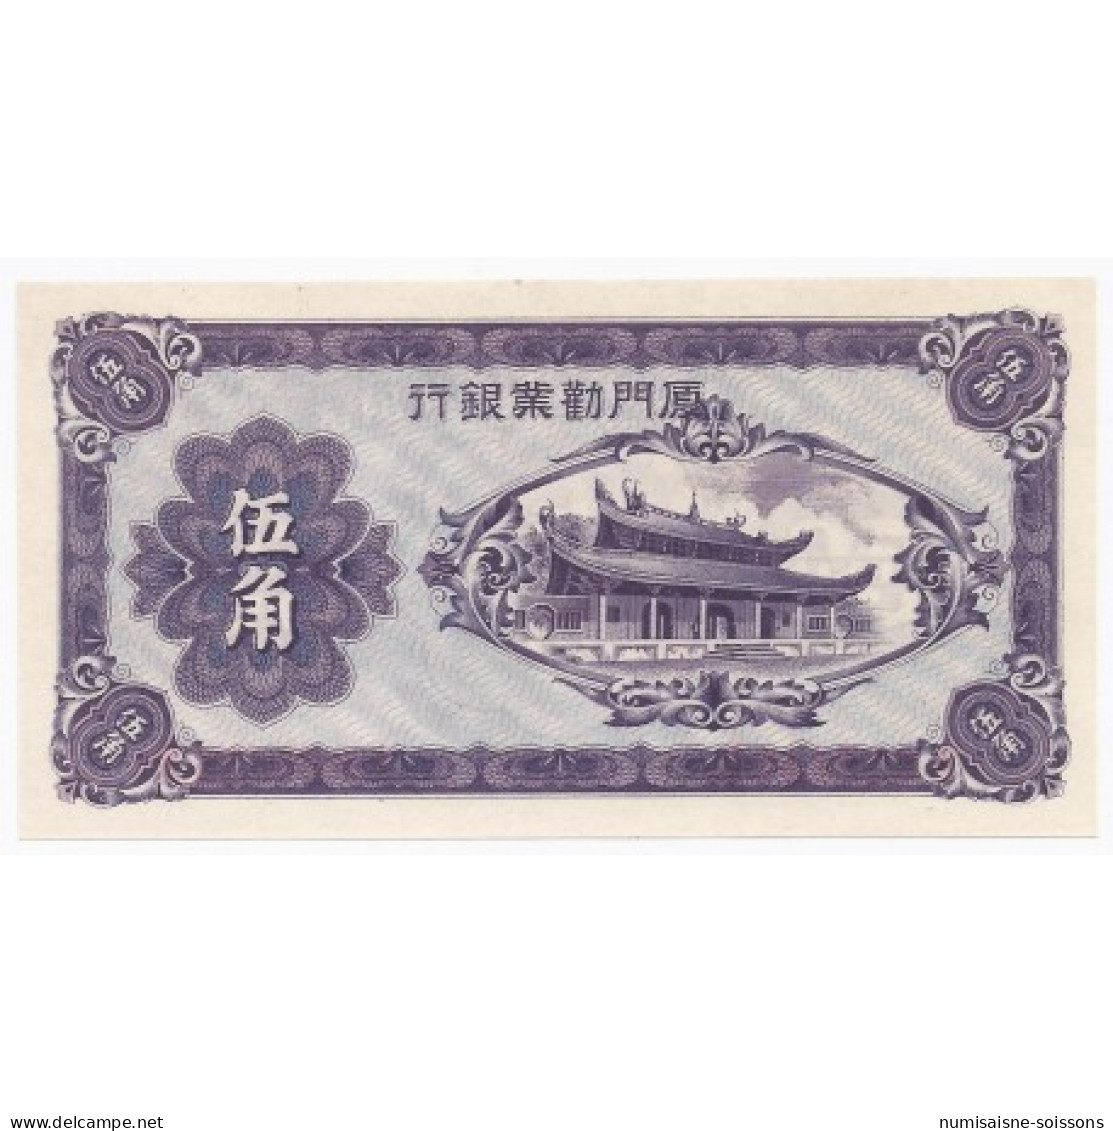 CHINE - PICK S 1658 - 50 CENTS 1940 - LA BANQUE INDUSTRIELLE DE AMOY - China